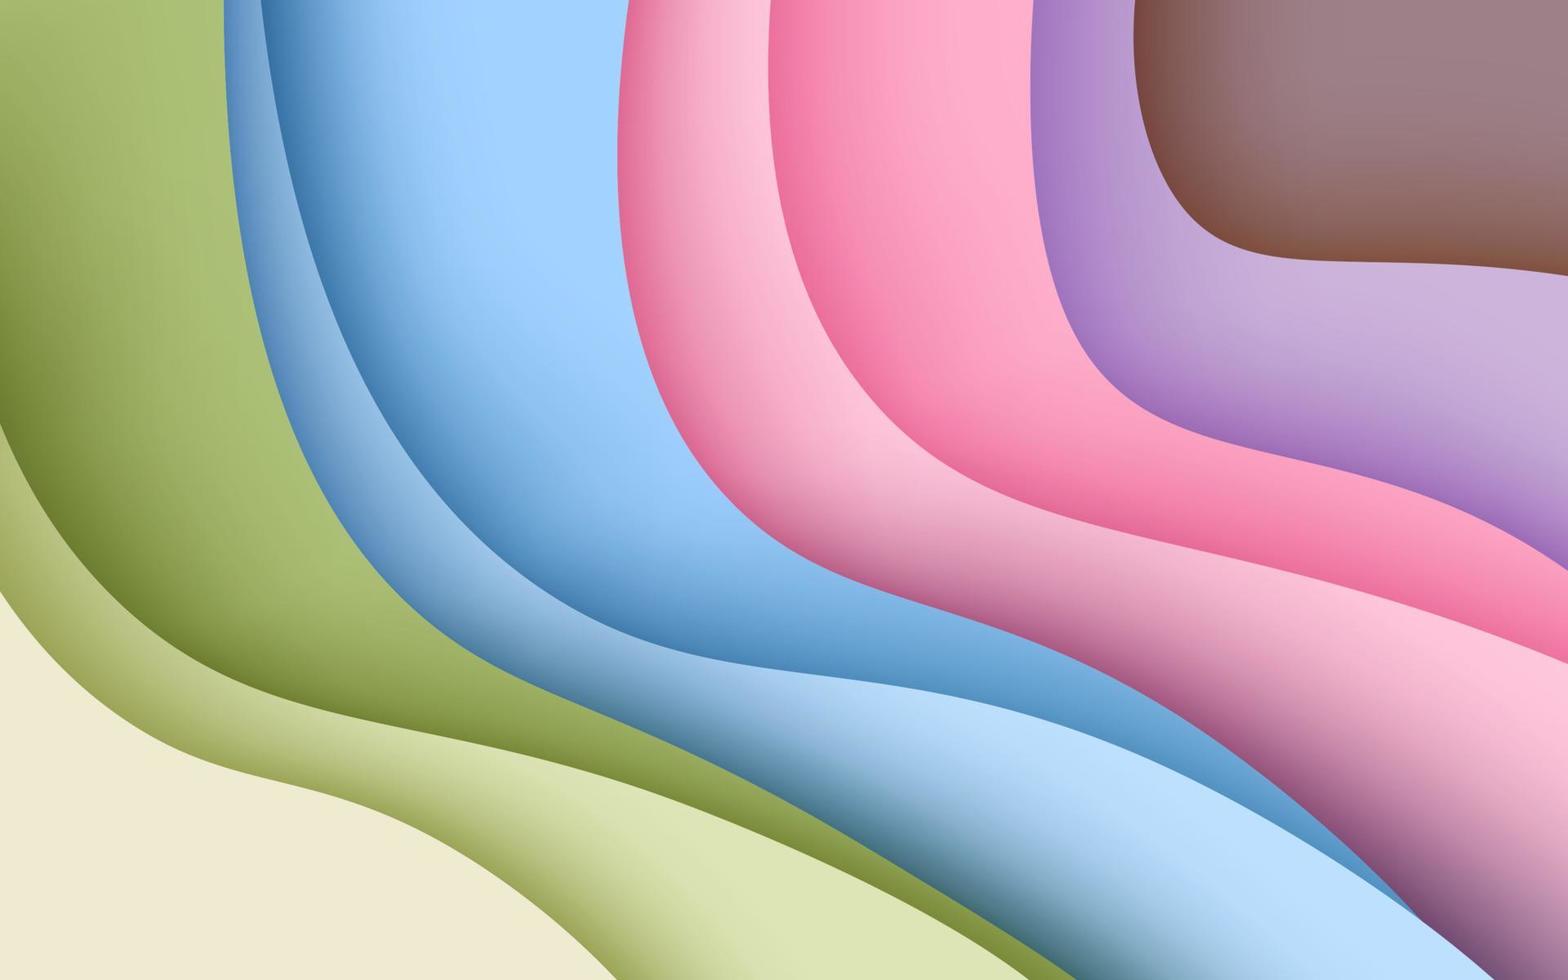 multi farbig abstrakt Grün, Blau, Rosa. lila Sanft wellig Papierschnitt Überlappung Schichten Hintergrund. eps10 Vektor